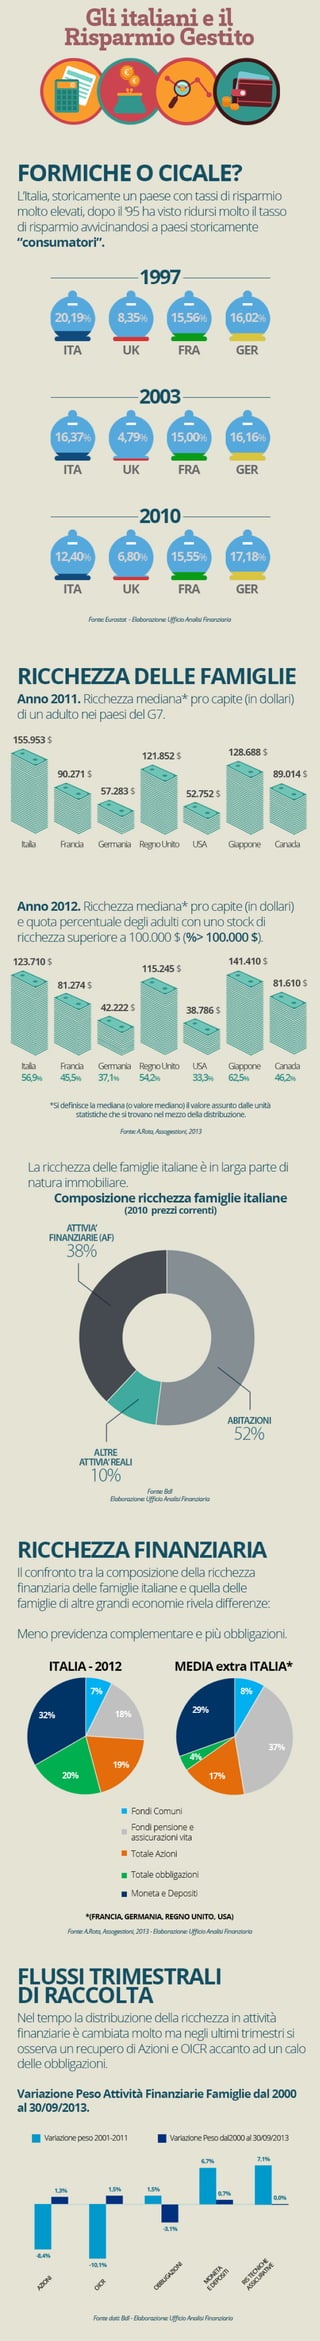 Infografica - Gli italiani ed il risparmio gestito